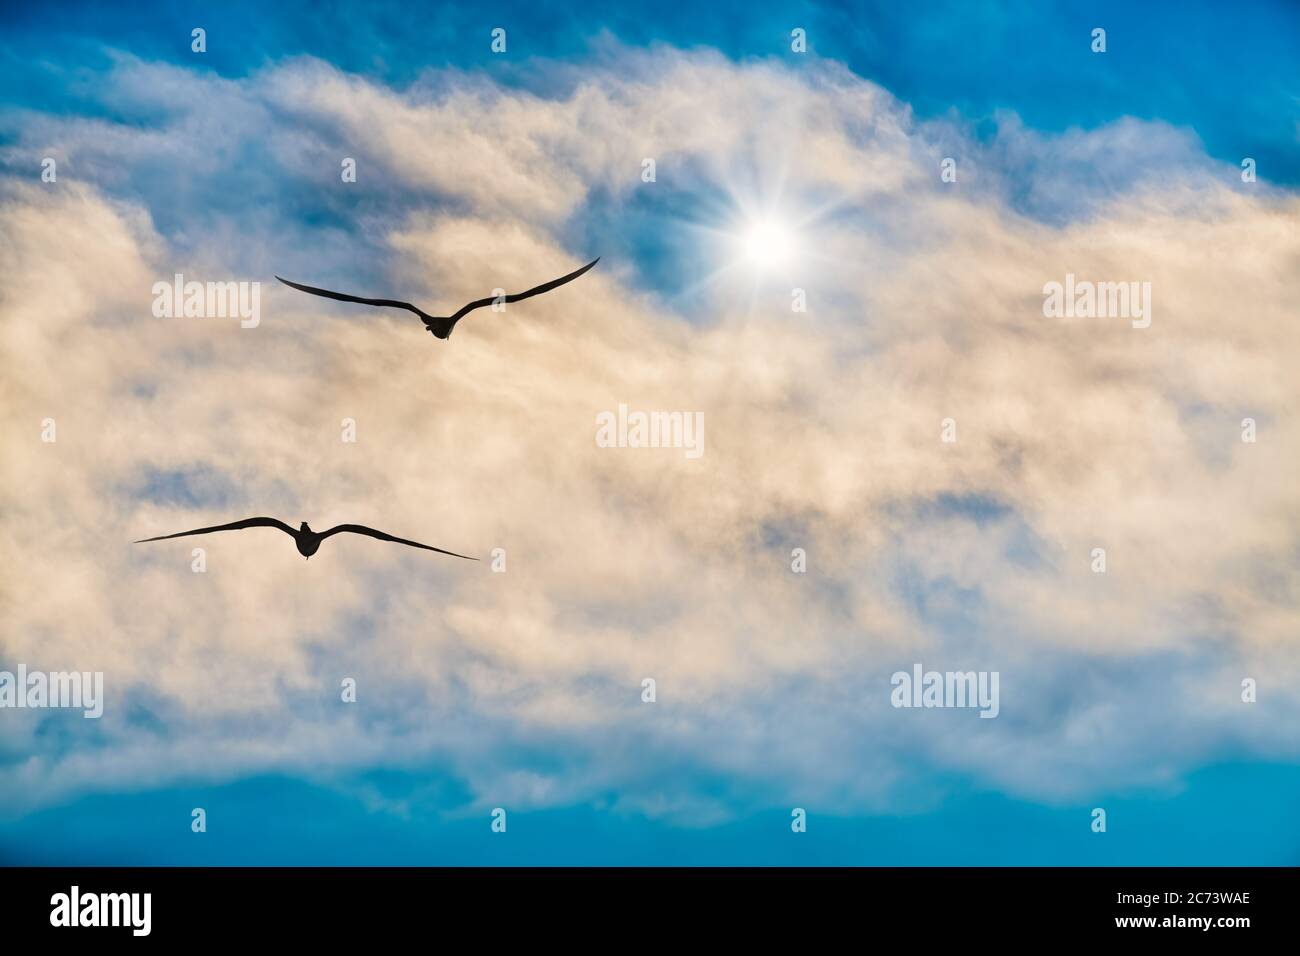 Deux oiseaux survolant les nuages vers une étoile lumineuse Banque D'Images